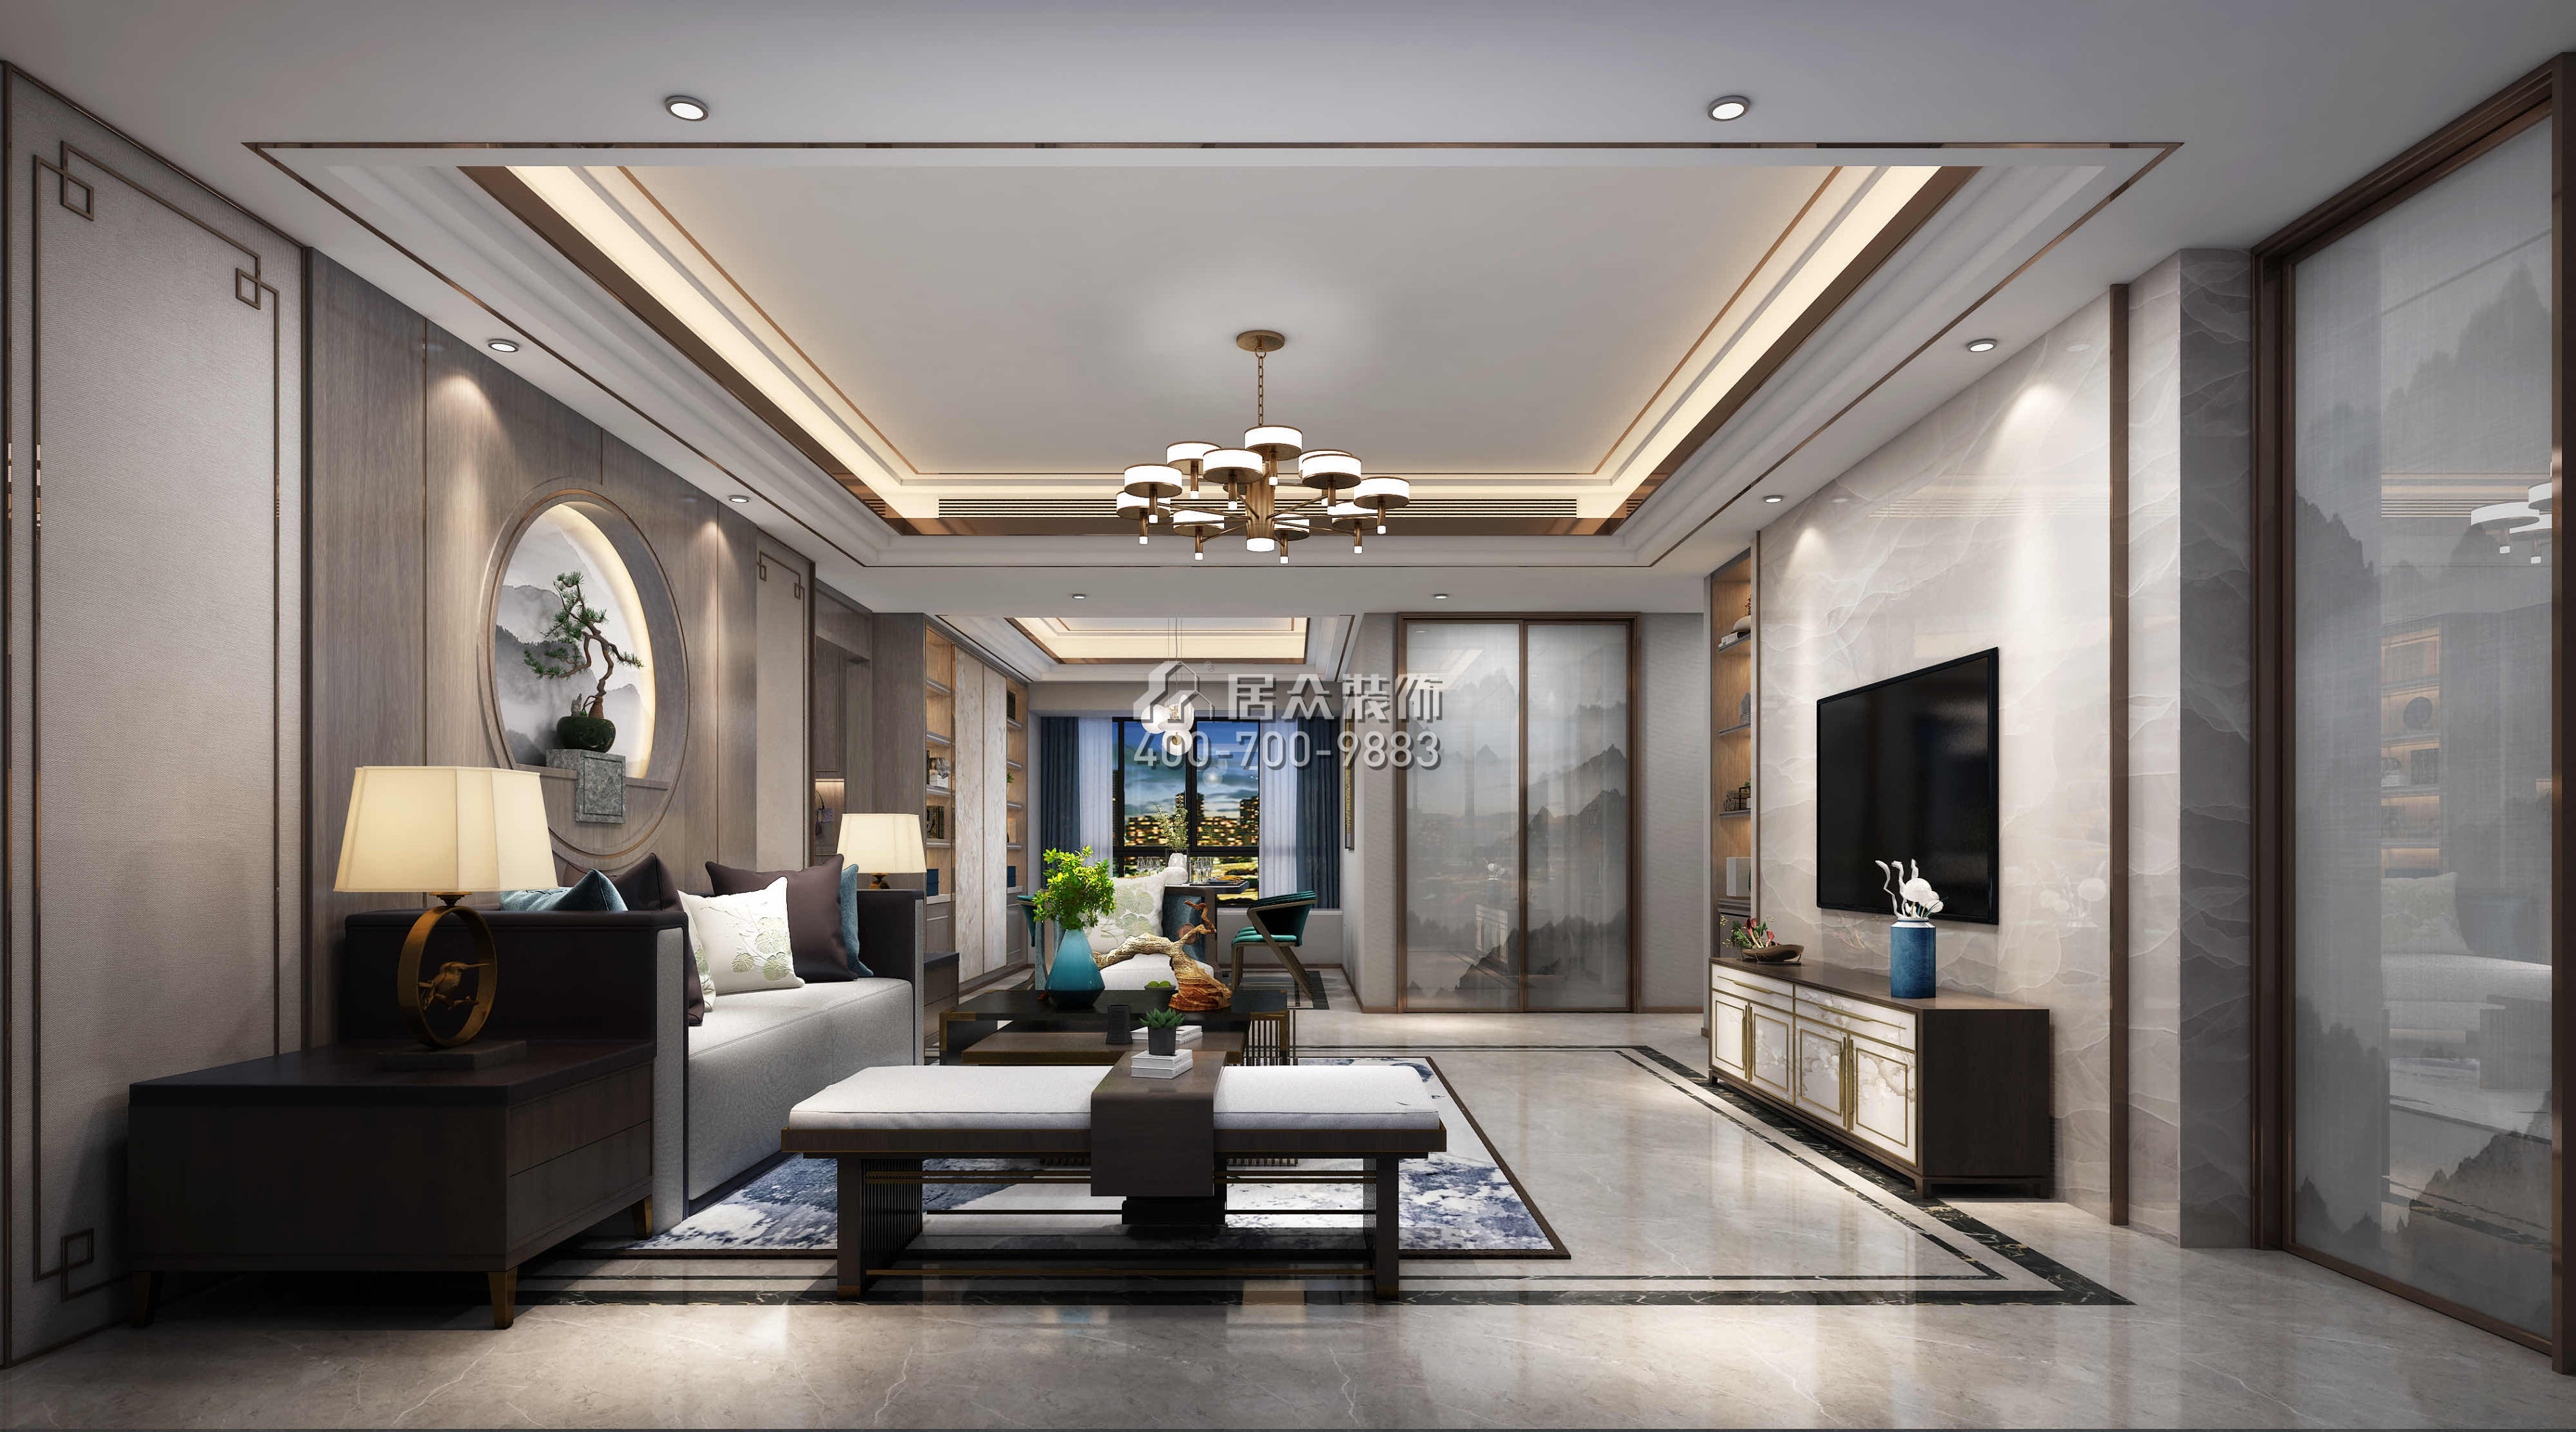 香山美墅五期165平方米中式风格平层户型客厅装修效果图